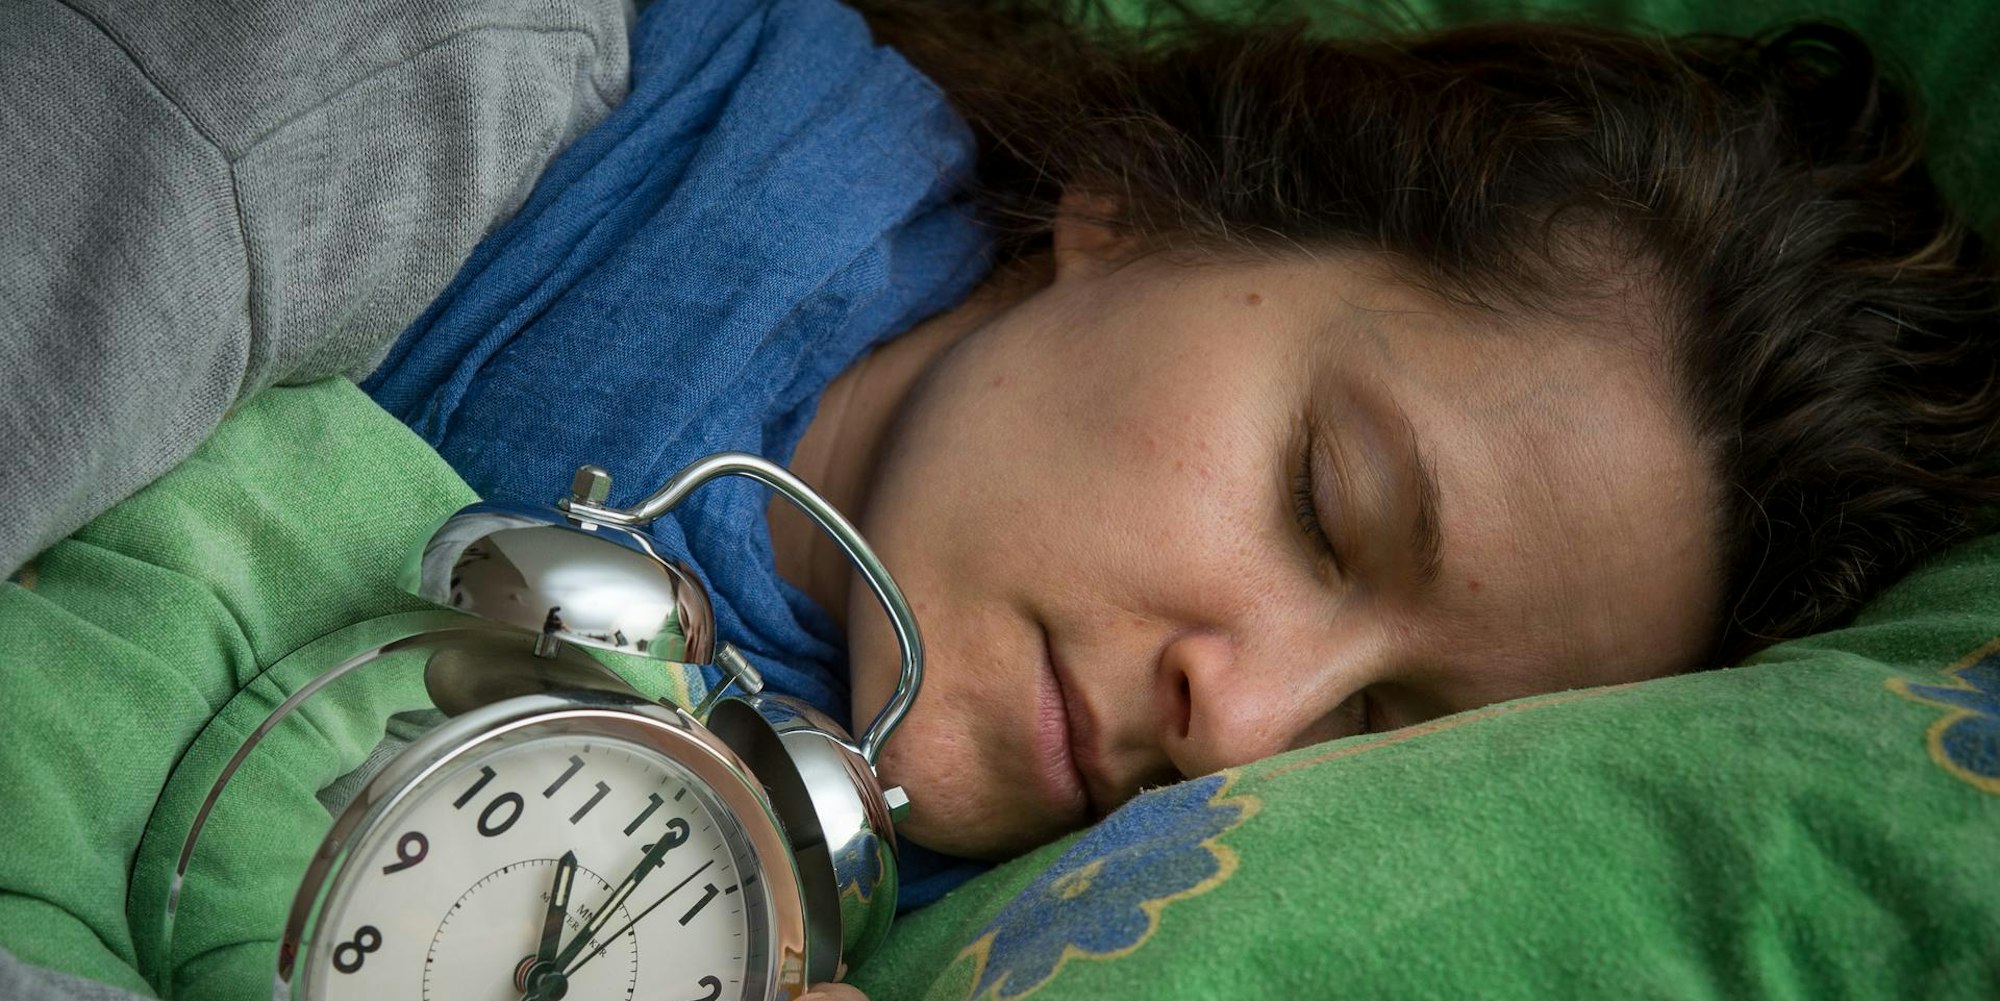 Geld im Schlaf verdienen können die Studenten beim nächtlichen Bereitschaftsdienst. (Symbolbild)